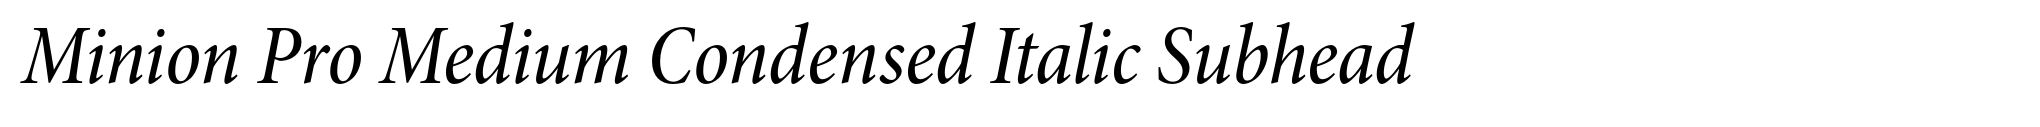 Minion Pro Medium Condensed Italic Subhead image